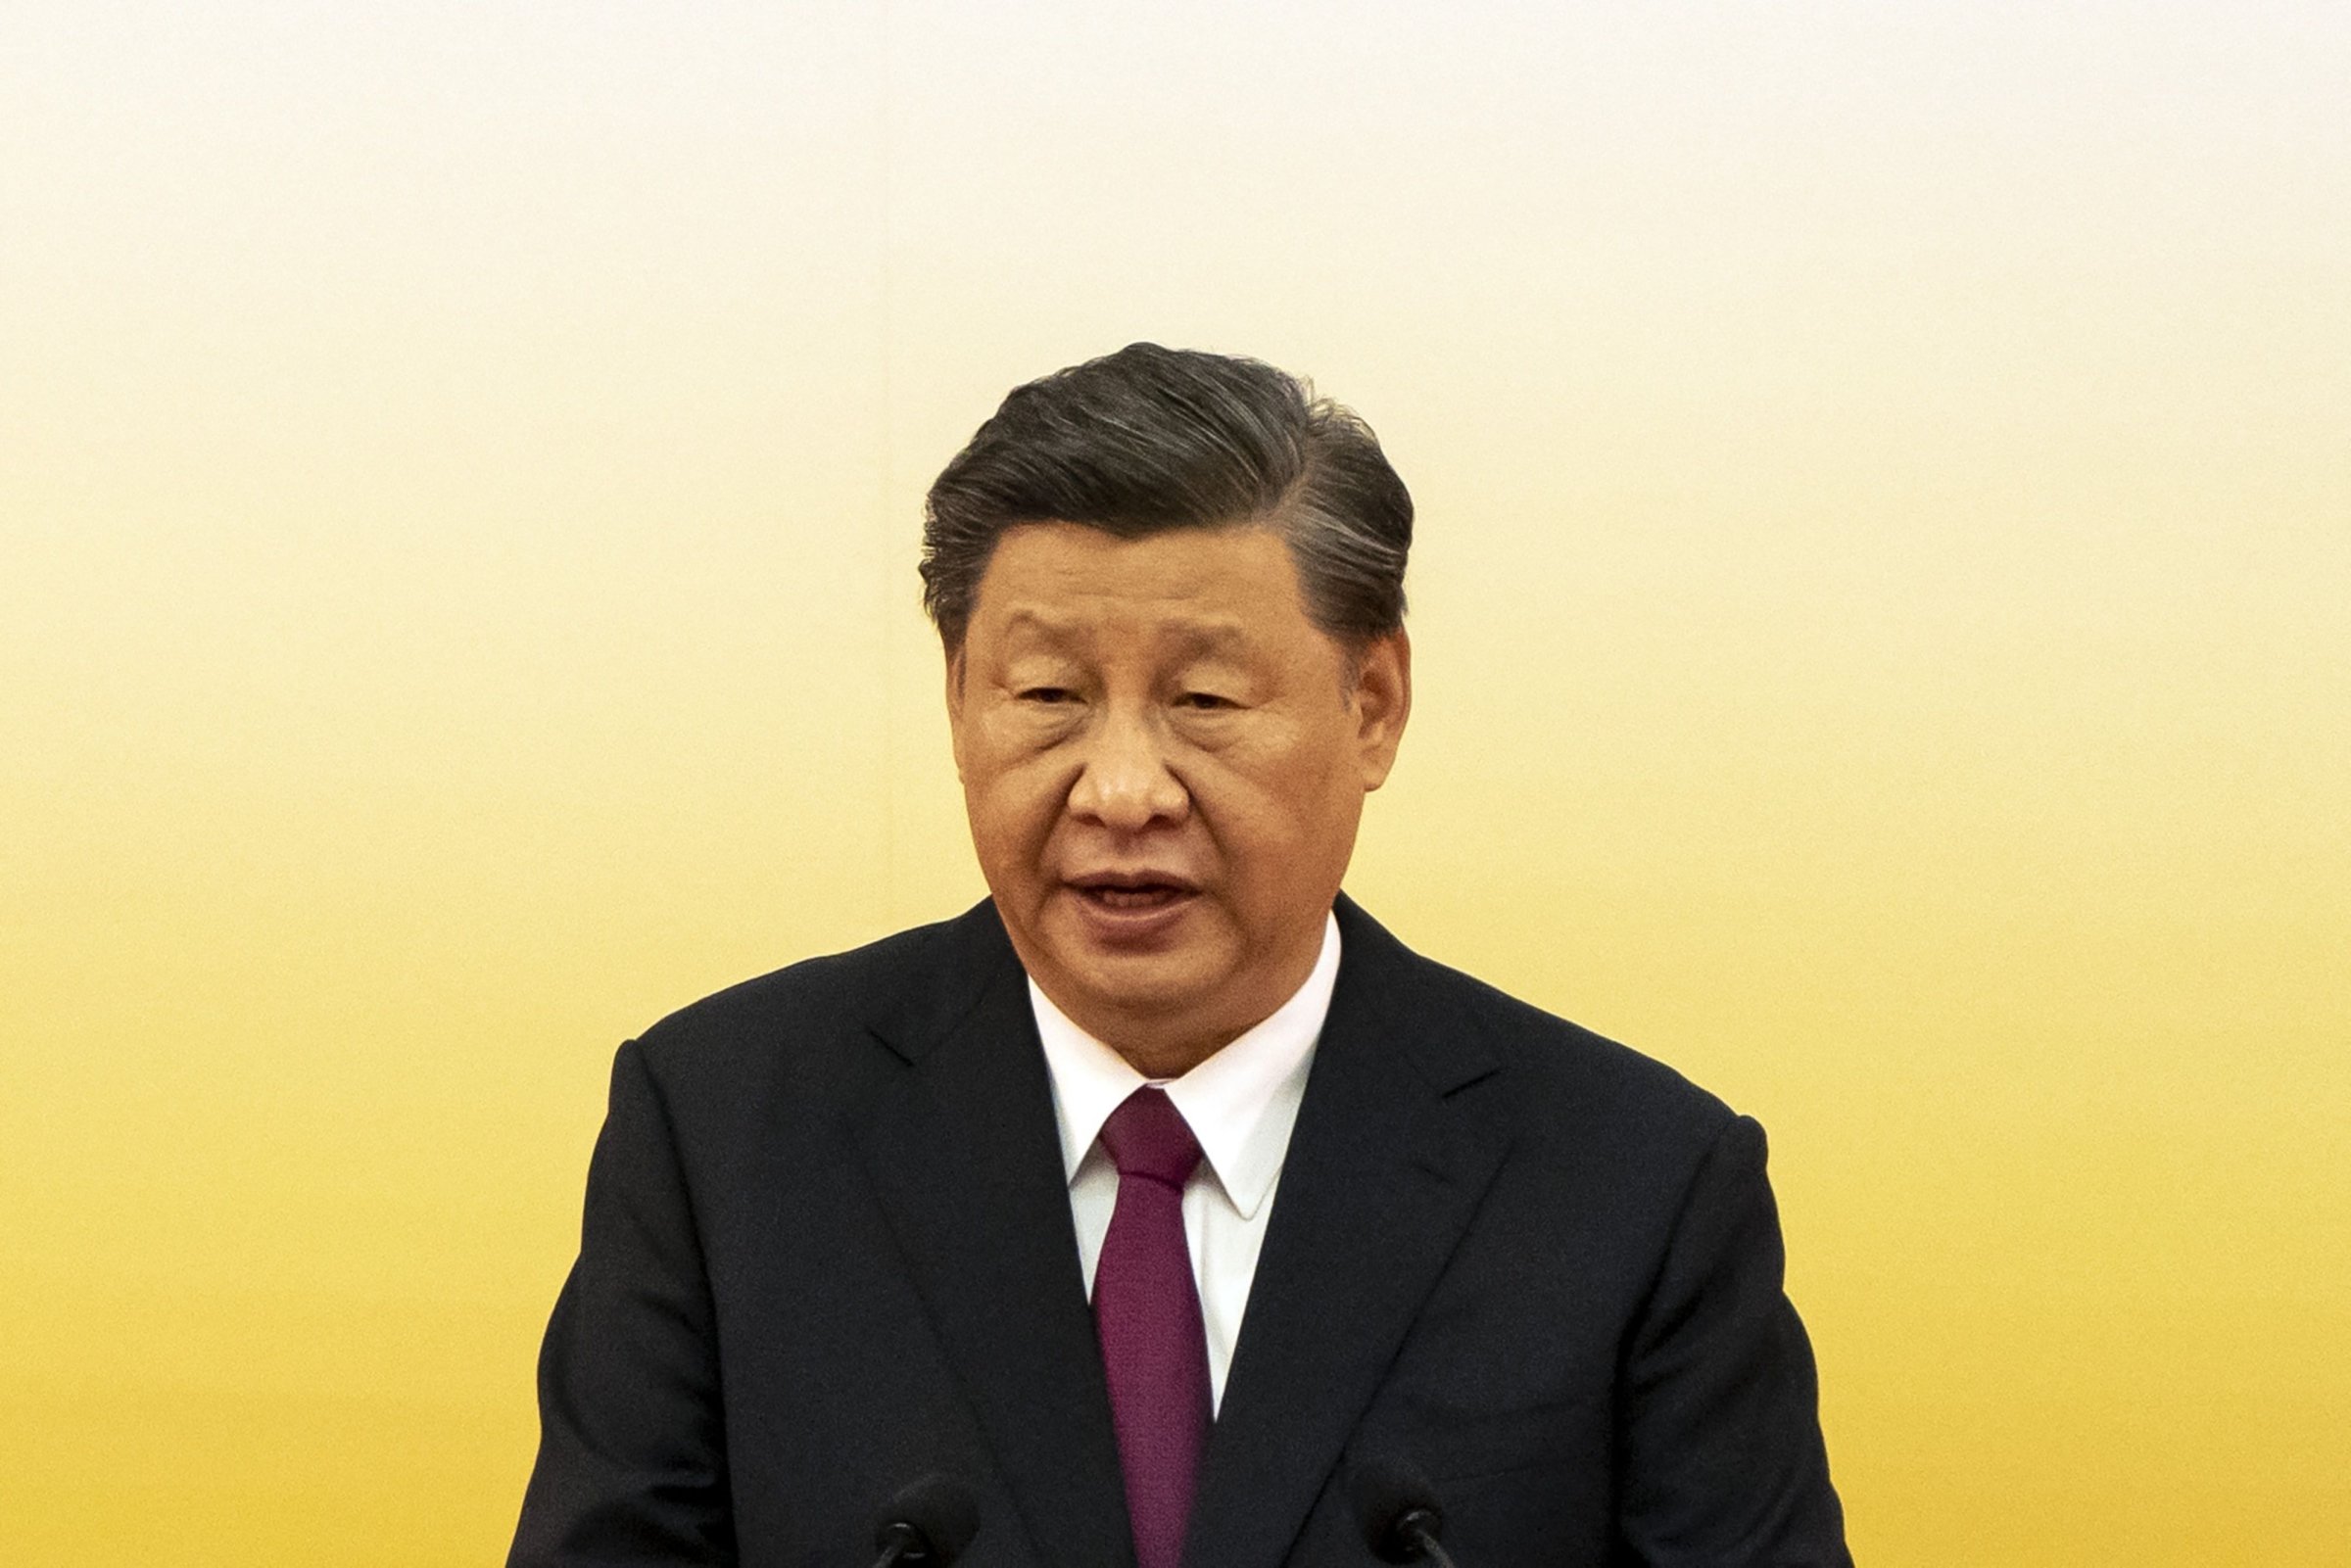 Chinas Xi Swears-In New Hong Kong Leader After Crackdown